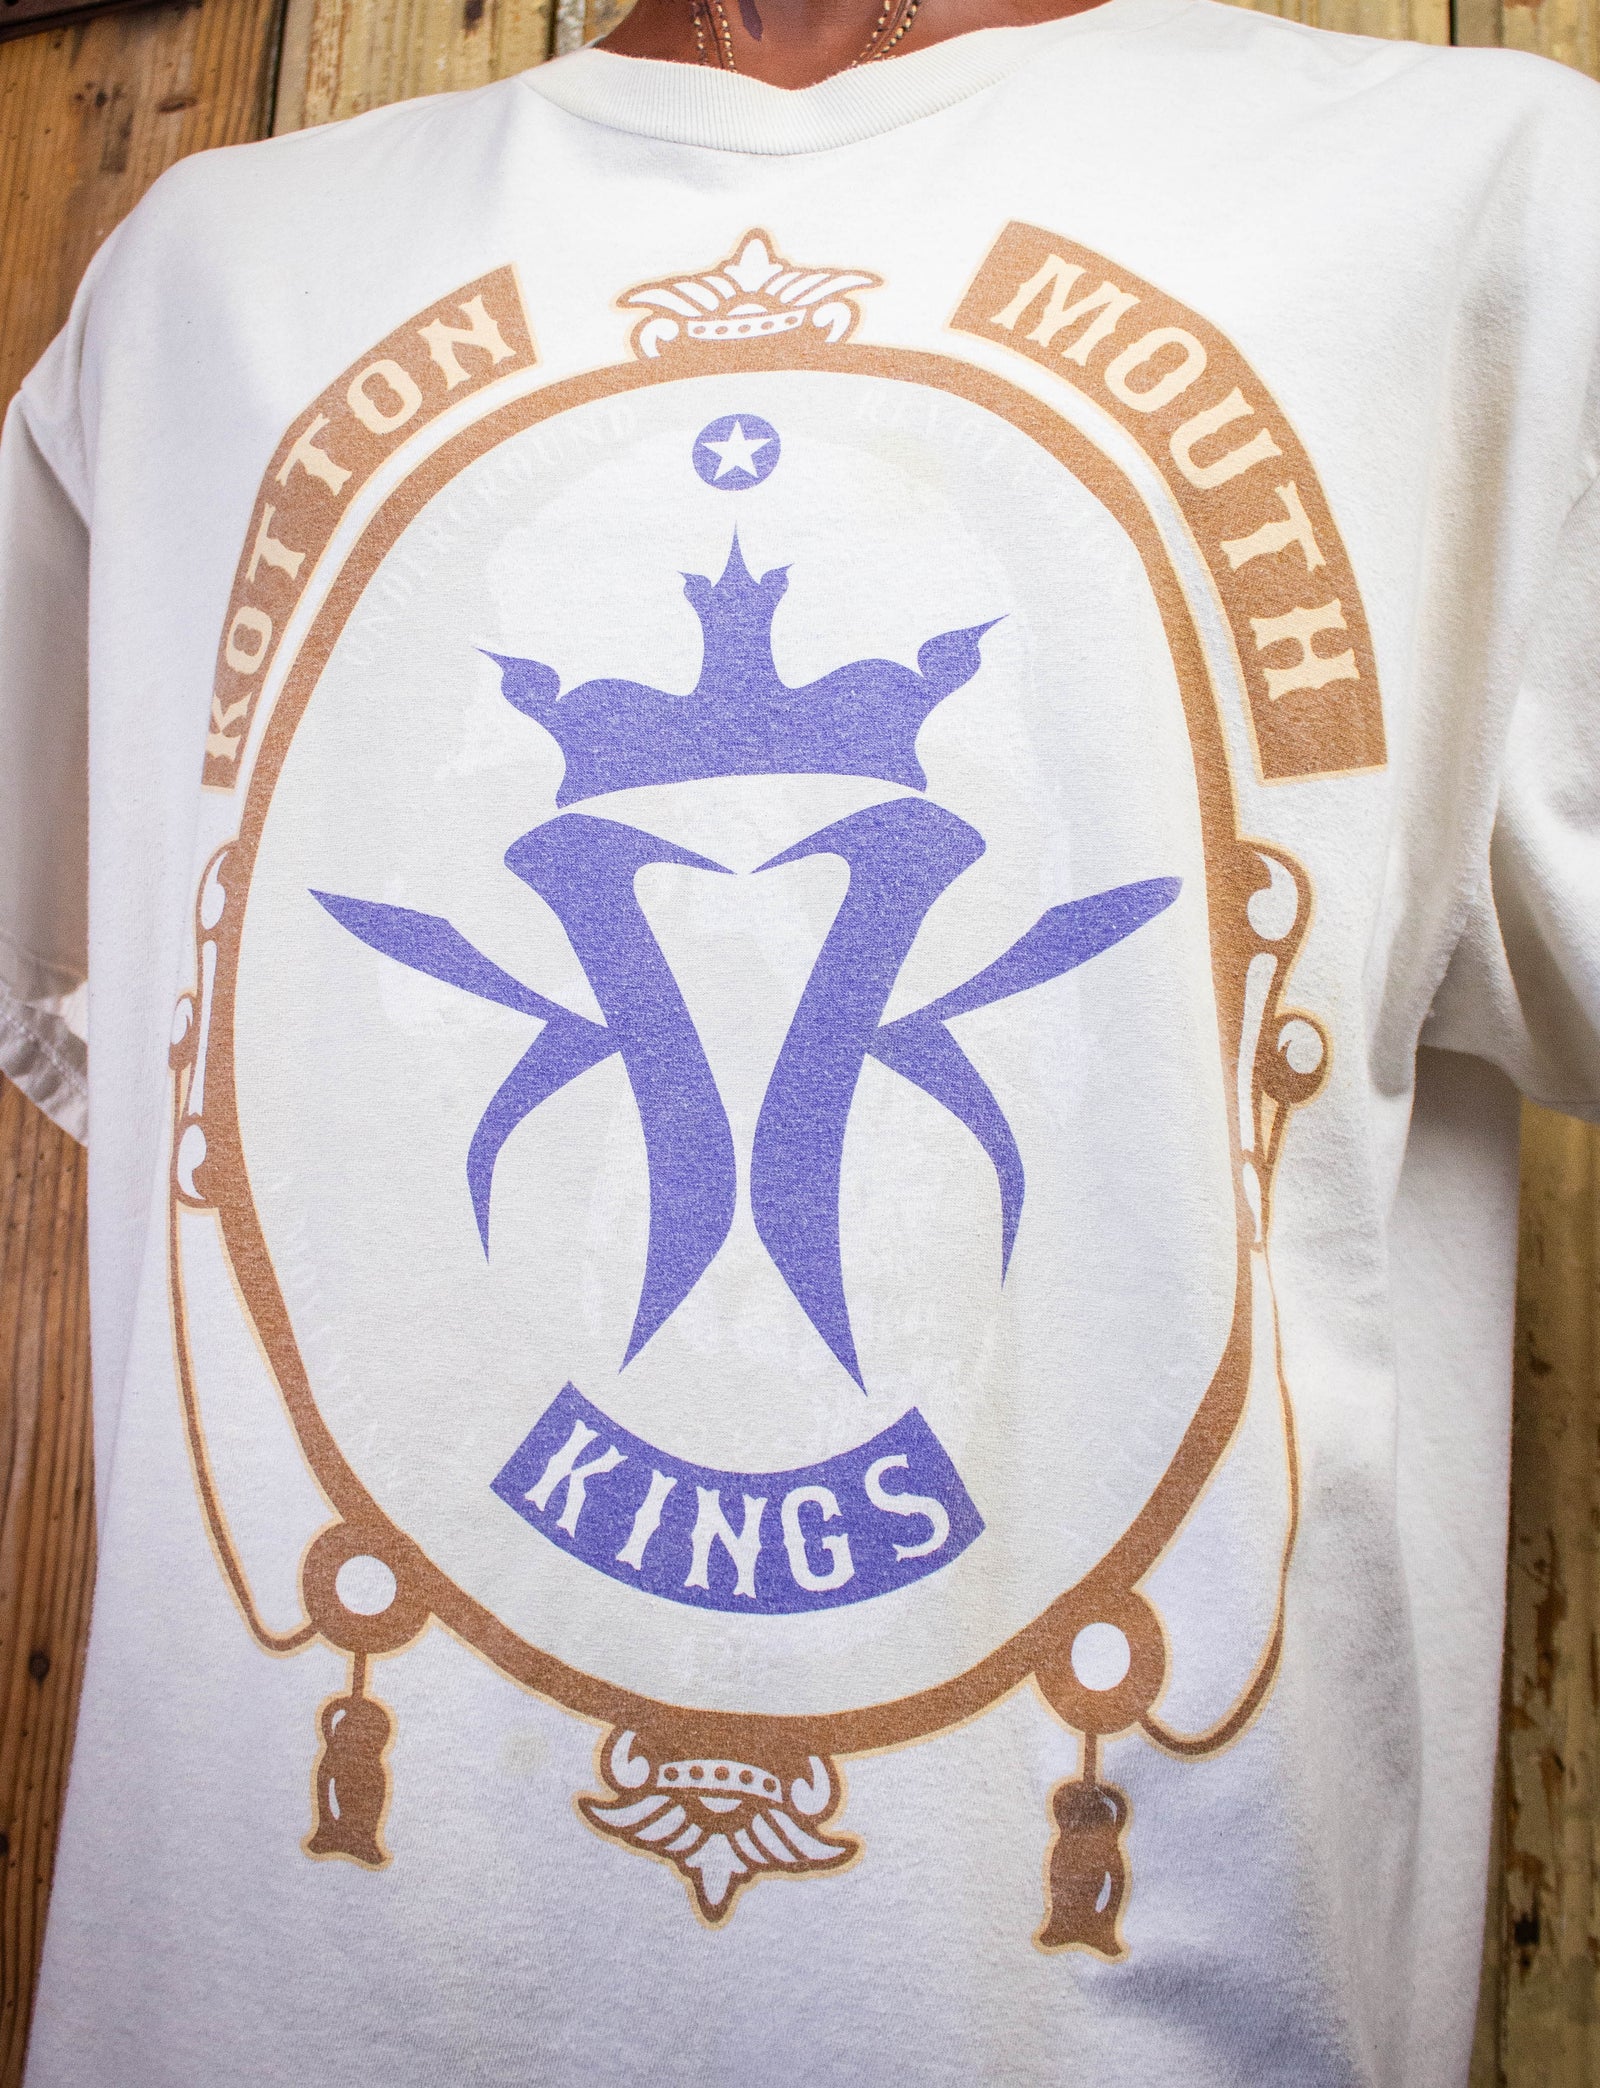 Vintage Kotton Mouth Kings Rap T Shirt 2000s White 2XL